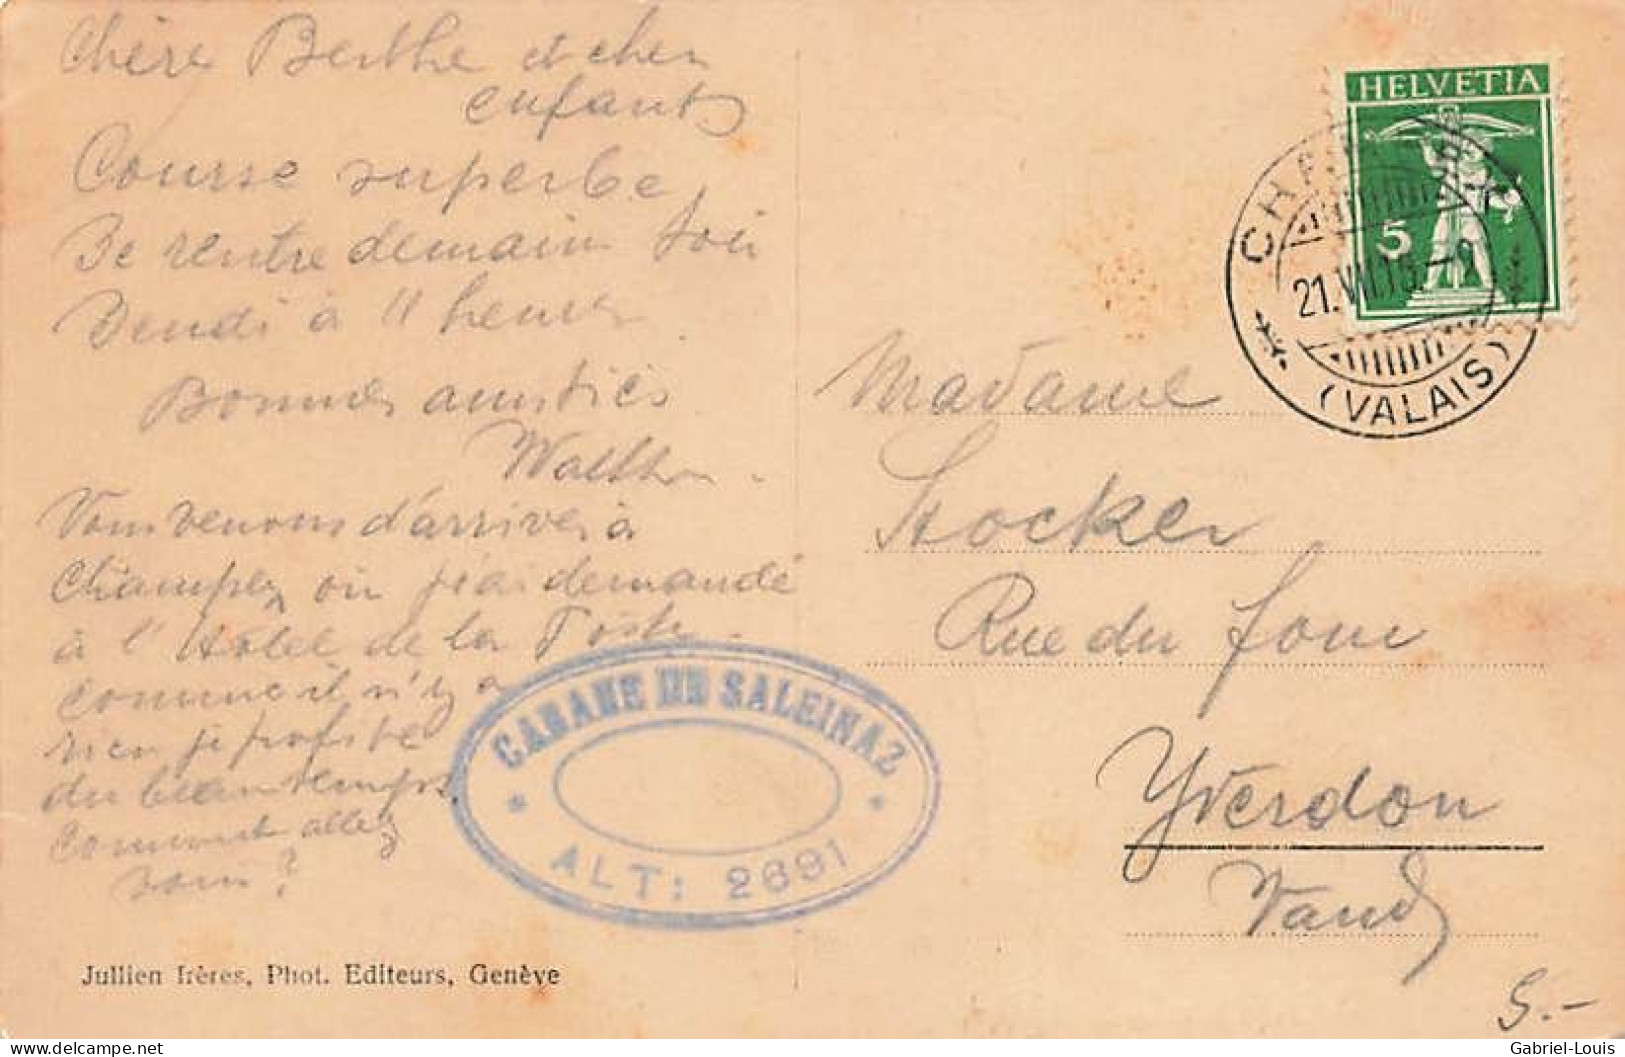 Intérieur De La Cabane De Saleinaz 1915 - Orsières